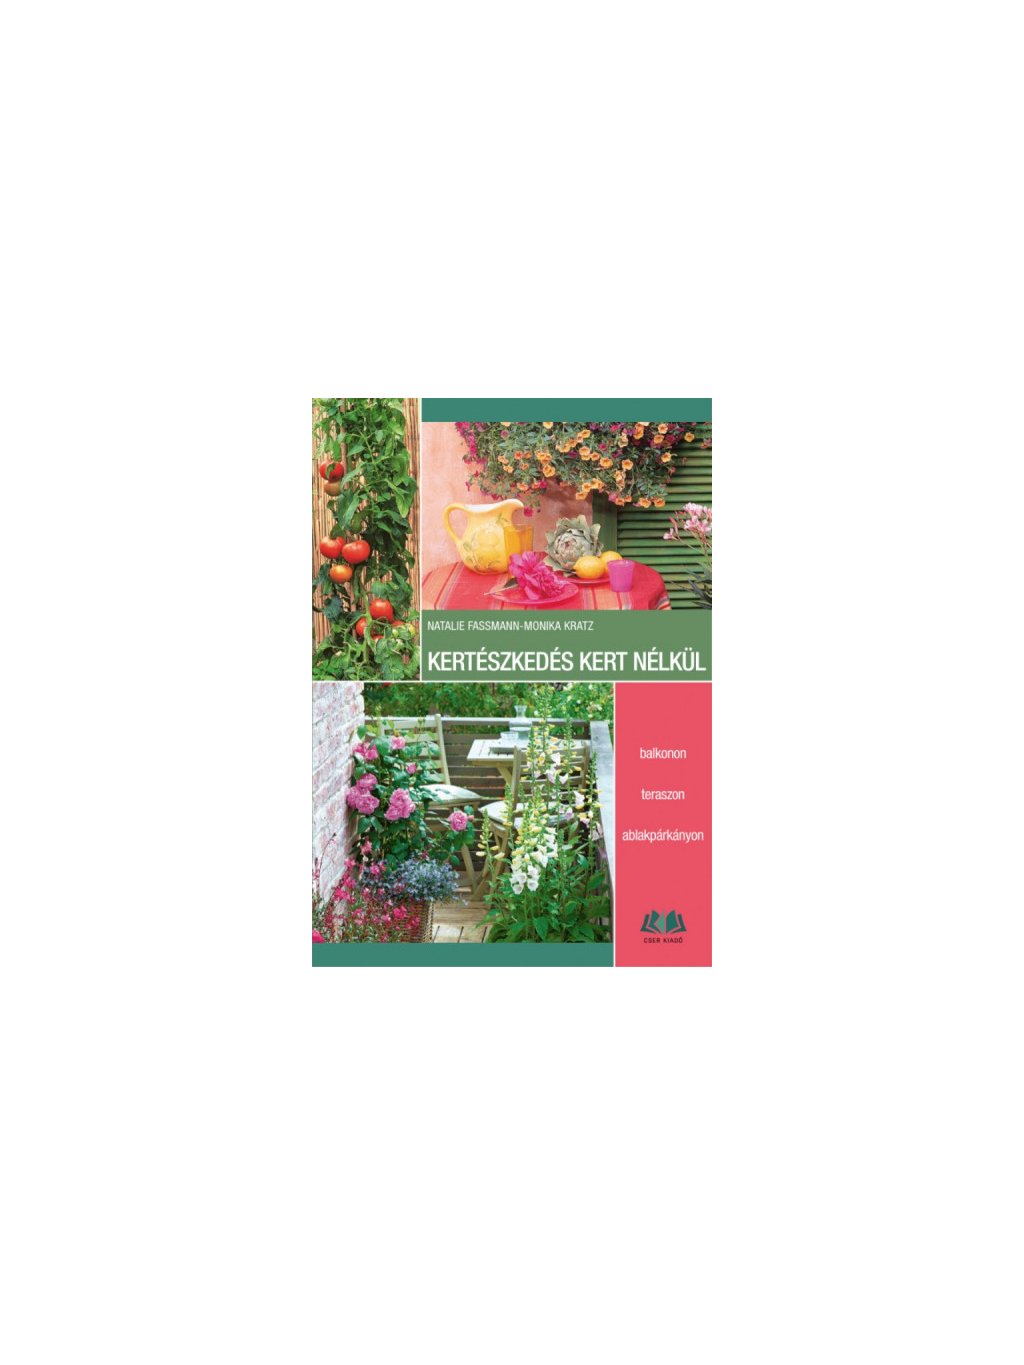 Natalie Fassmann, Monika Kratz: Kertészkedés kert nélkül